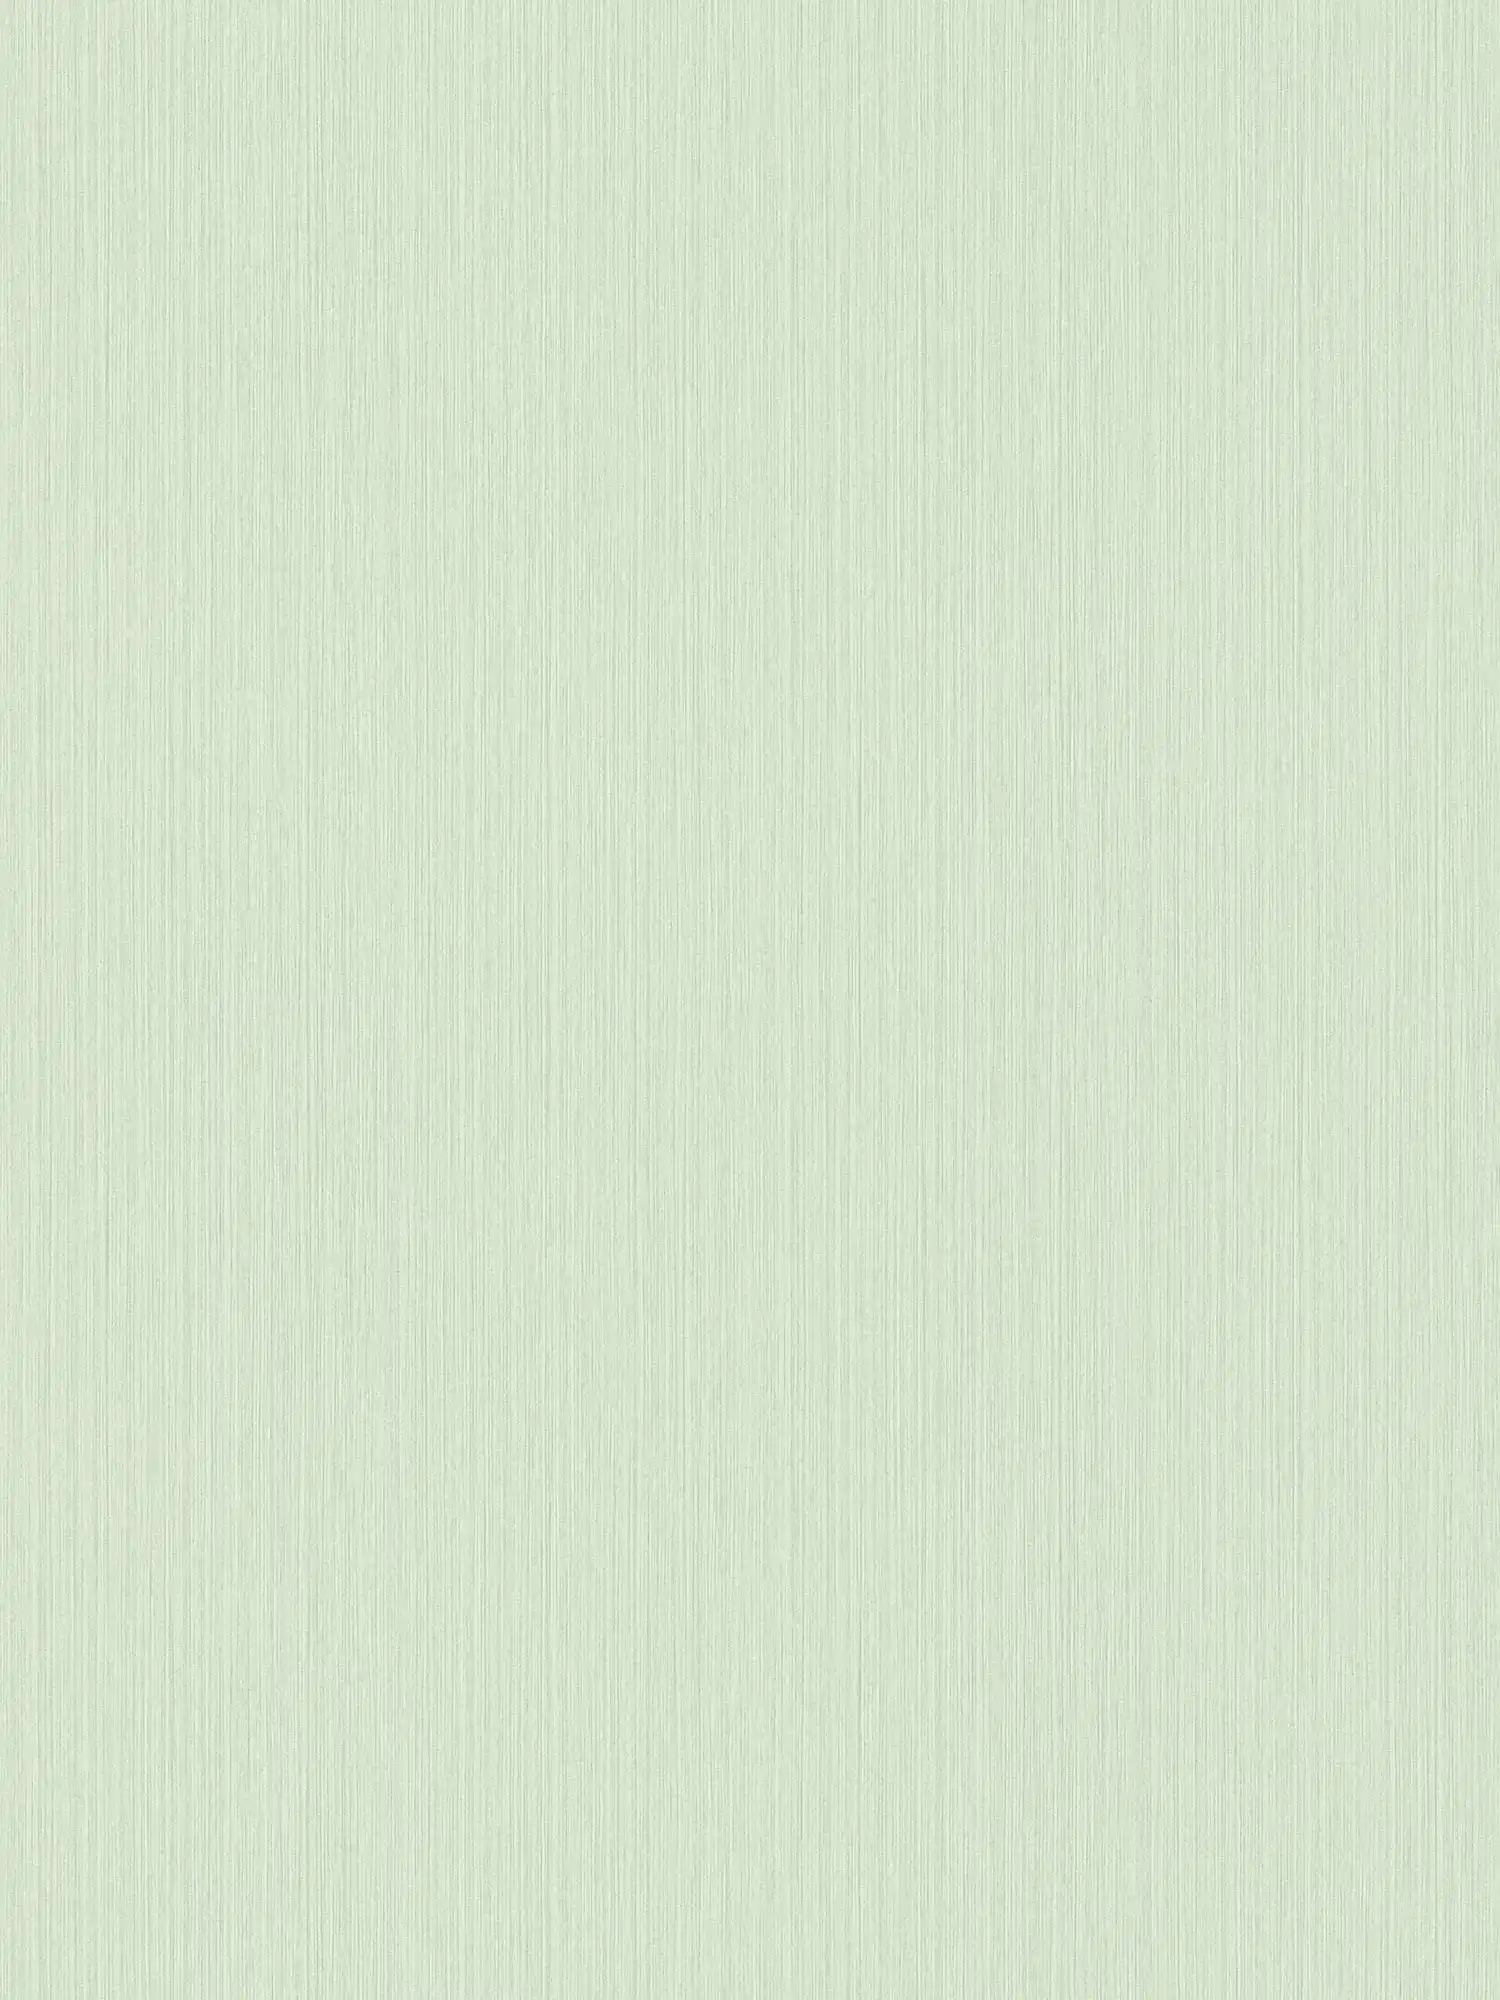 Einfarbige Tapete Hellgrün mit meliertem Textileffekt von MICHALSKY
